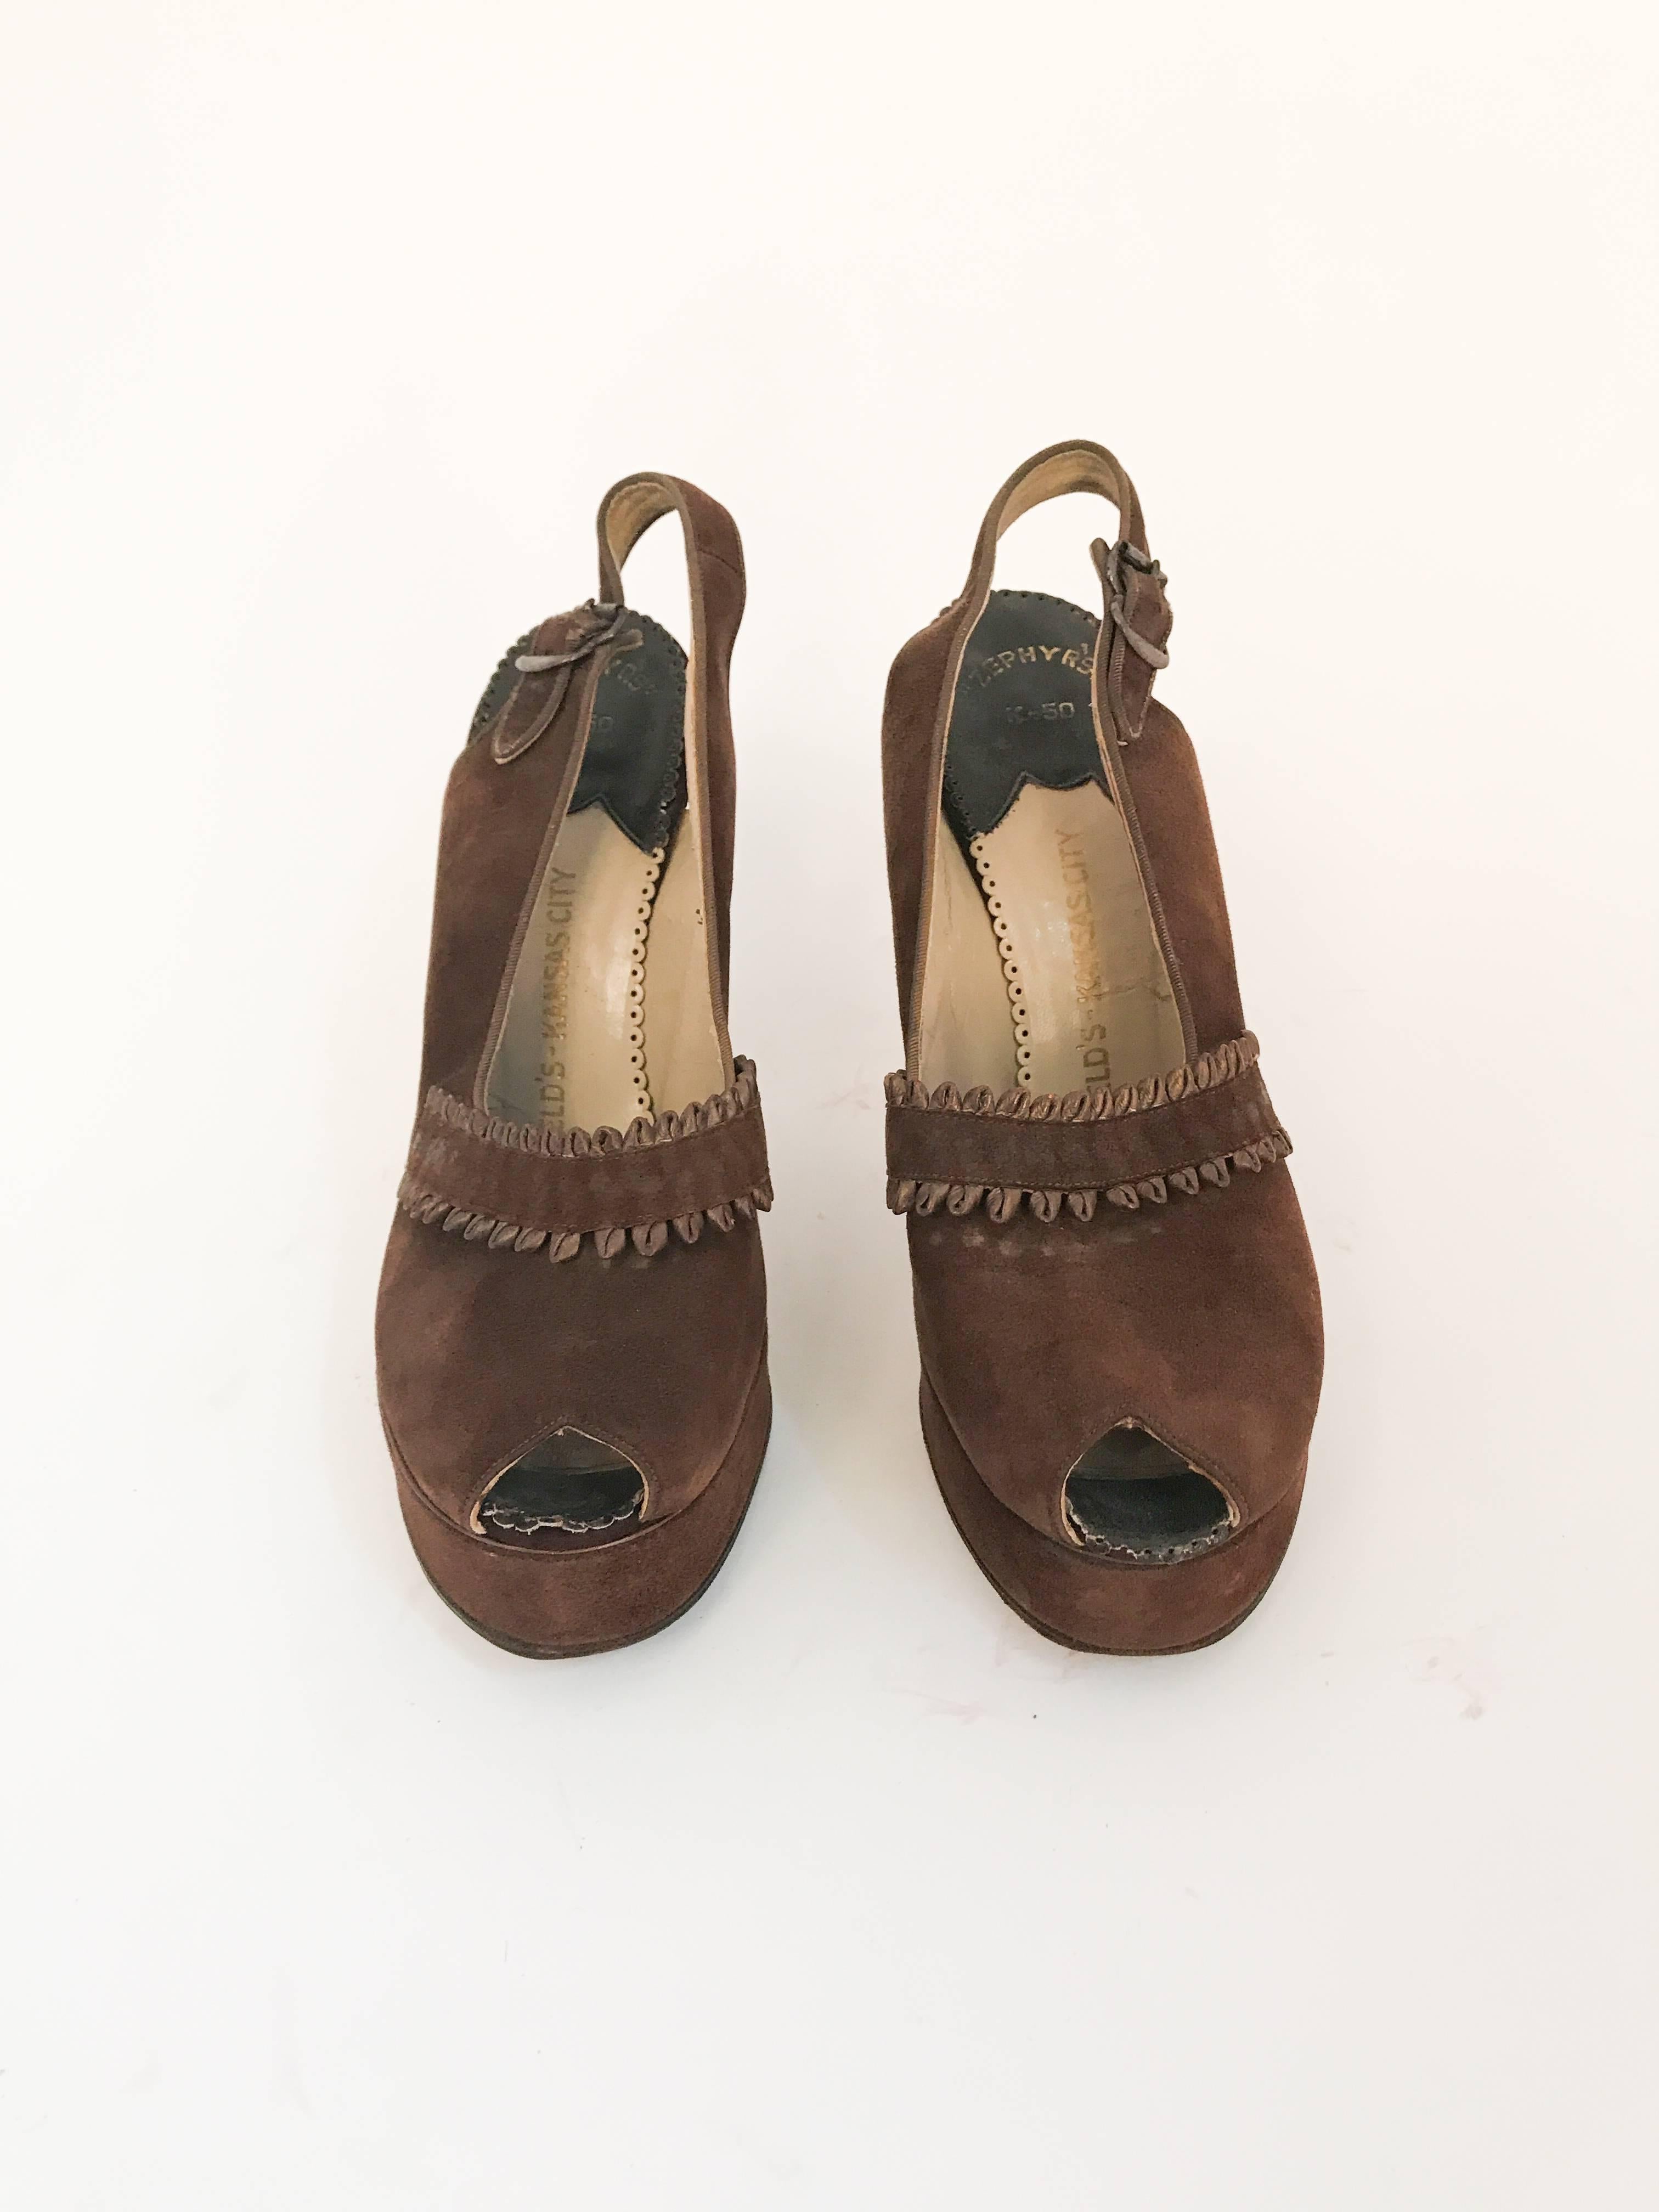 1947 Braune Sling Back Heels aus Wildleder und Leder. Braune Leder- und Wildlederabsätze mit Slingback und Schnallenverschluss. Akzentteil aus Wildleder und Lederschlaufen. 